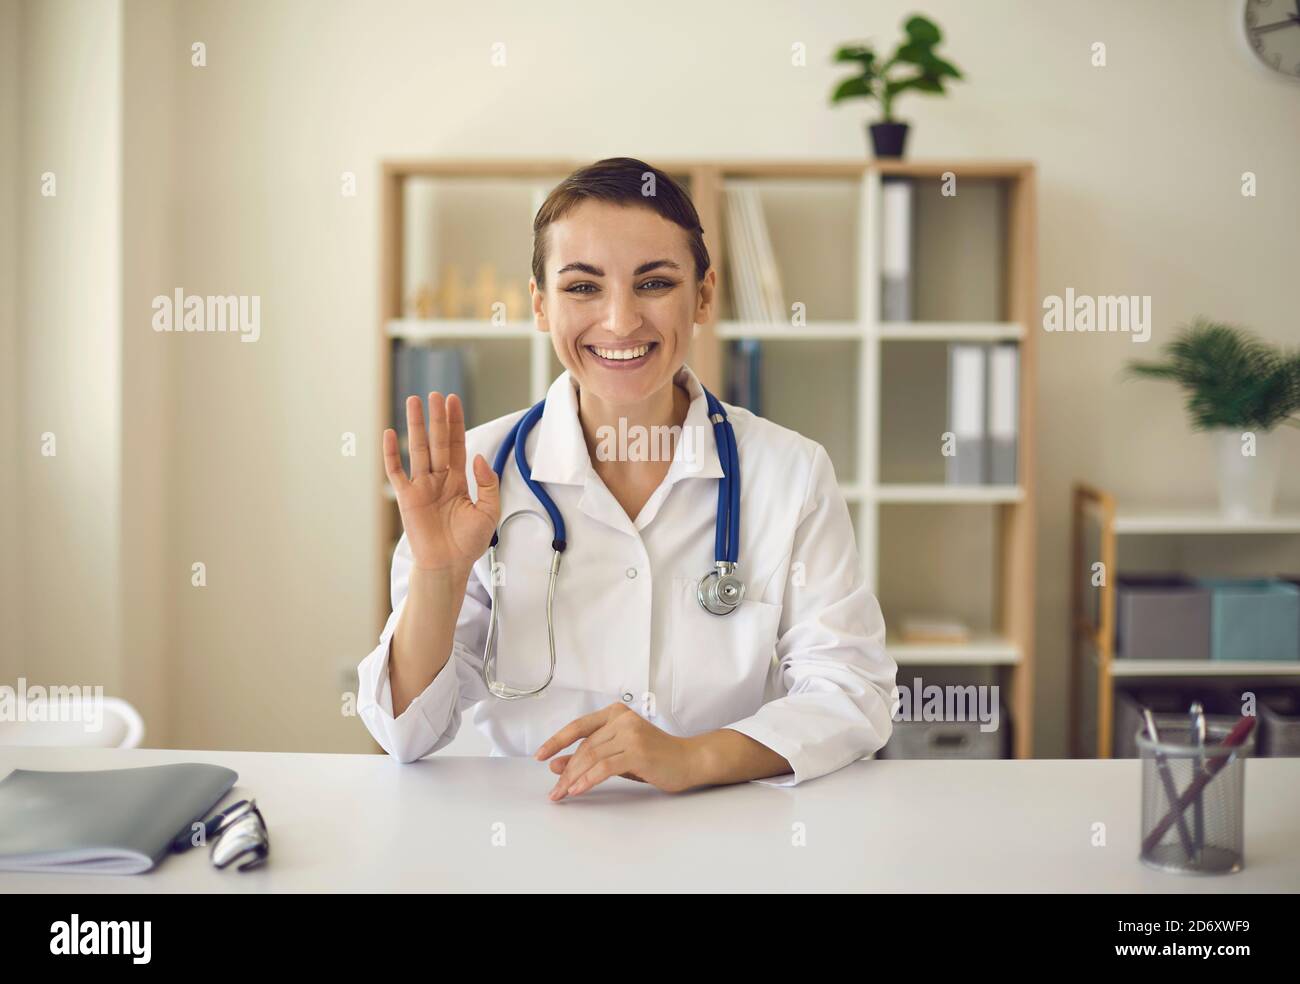 Junge lächelnde Ärztin, die Kamera anschaut und jemanden grüßt Online Stockfoto